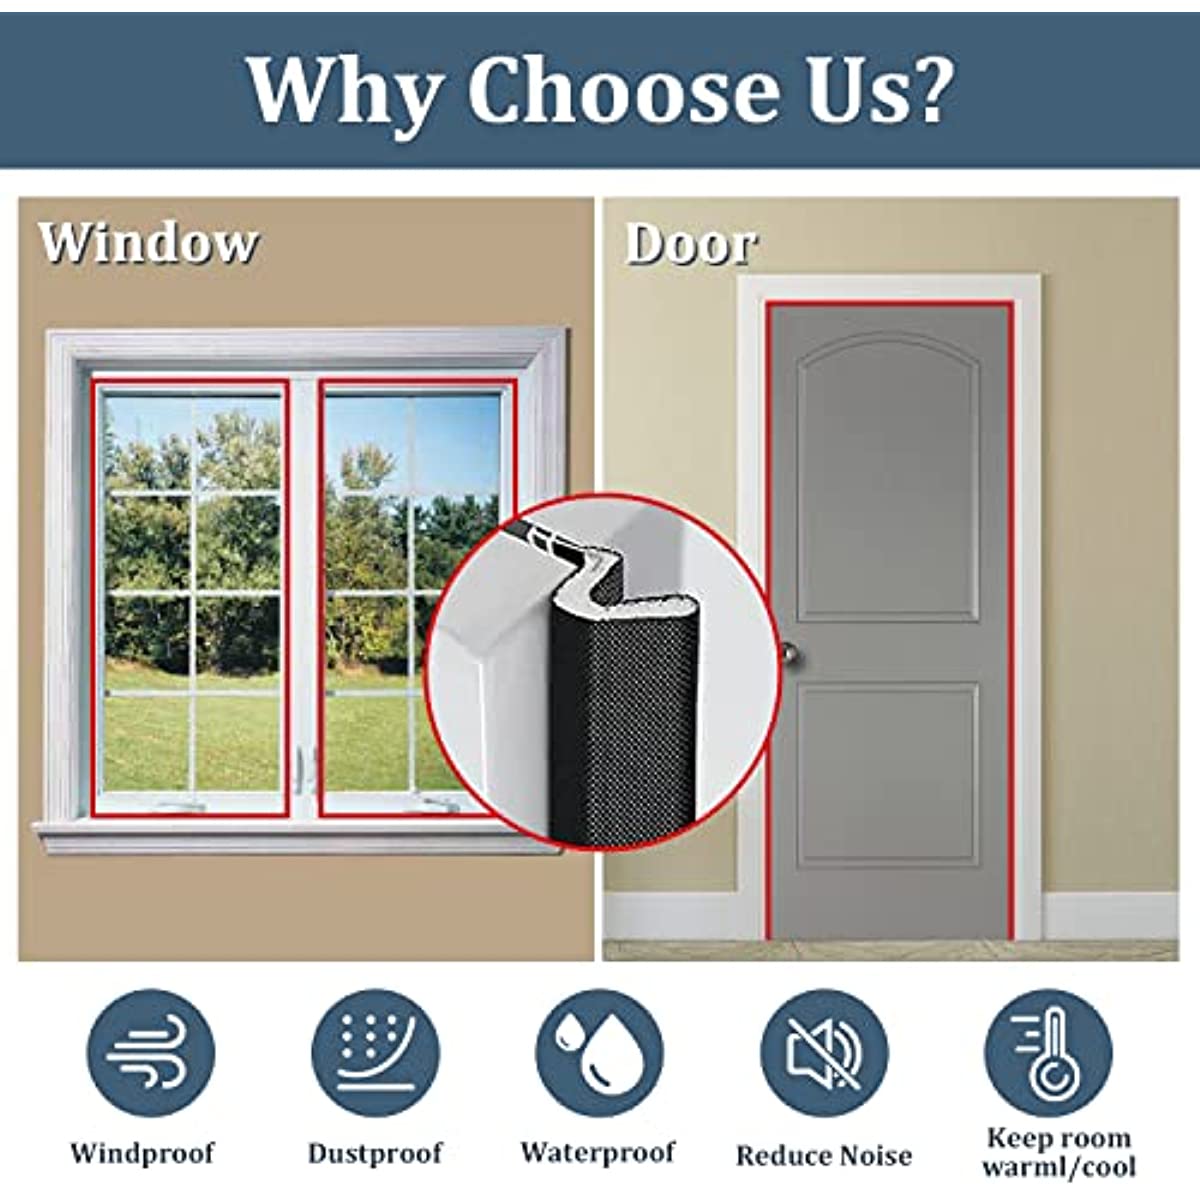 26ft Rubber Weather Stripping Door Seal Strip for Door Frame, Kerf Door Weatherstripping for Interior Doors, Door Draft Sealer Insulation Strip